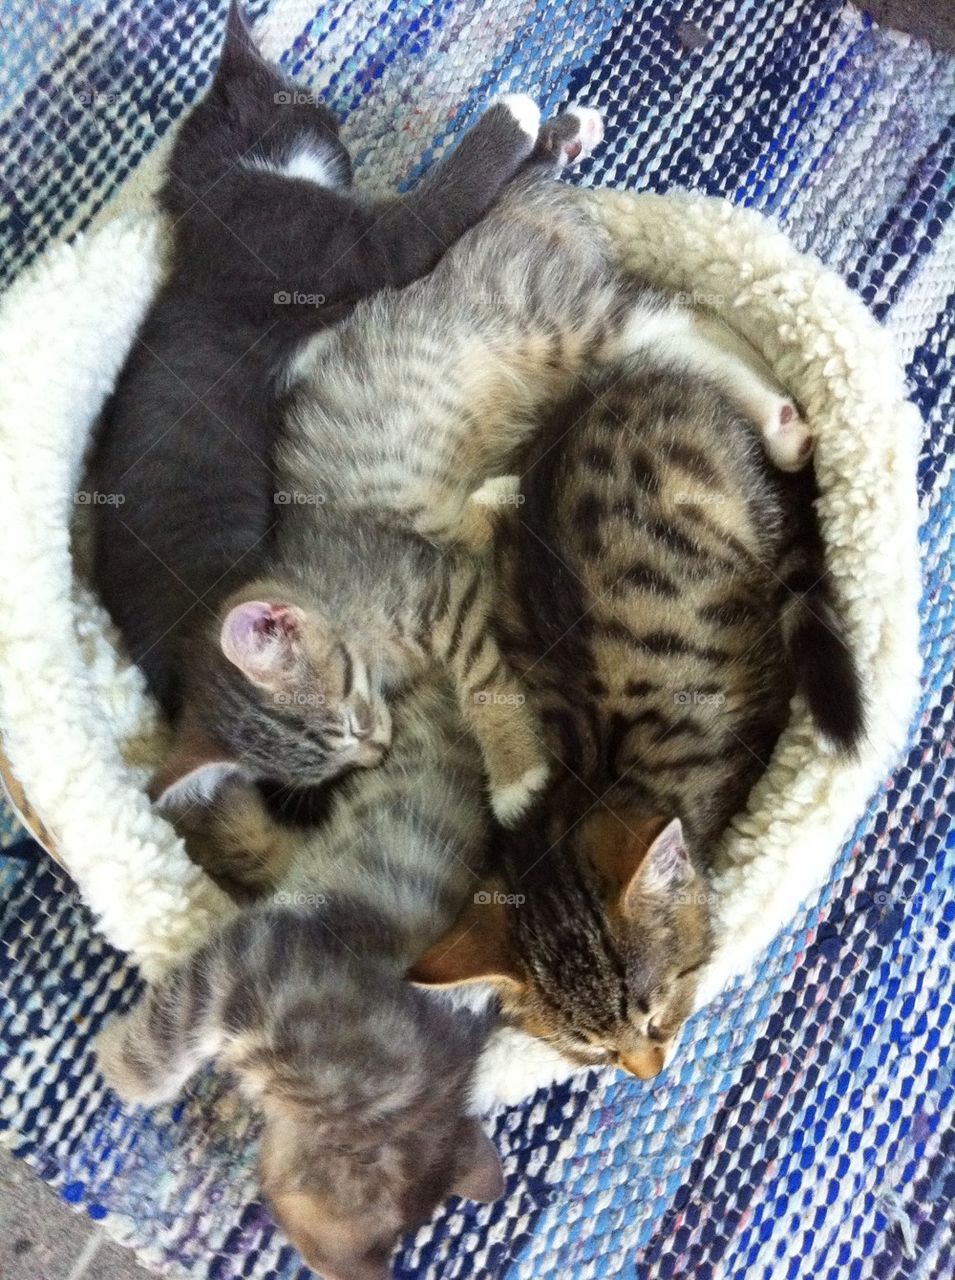 Basket full of kittens